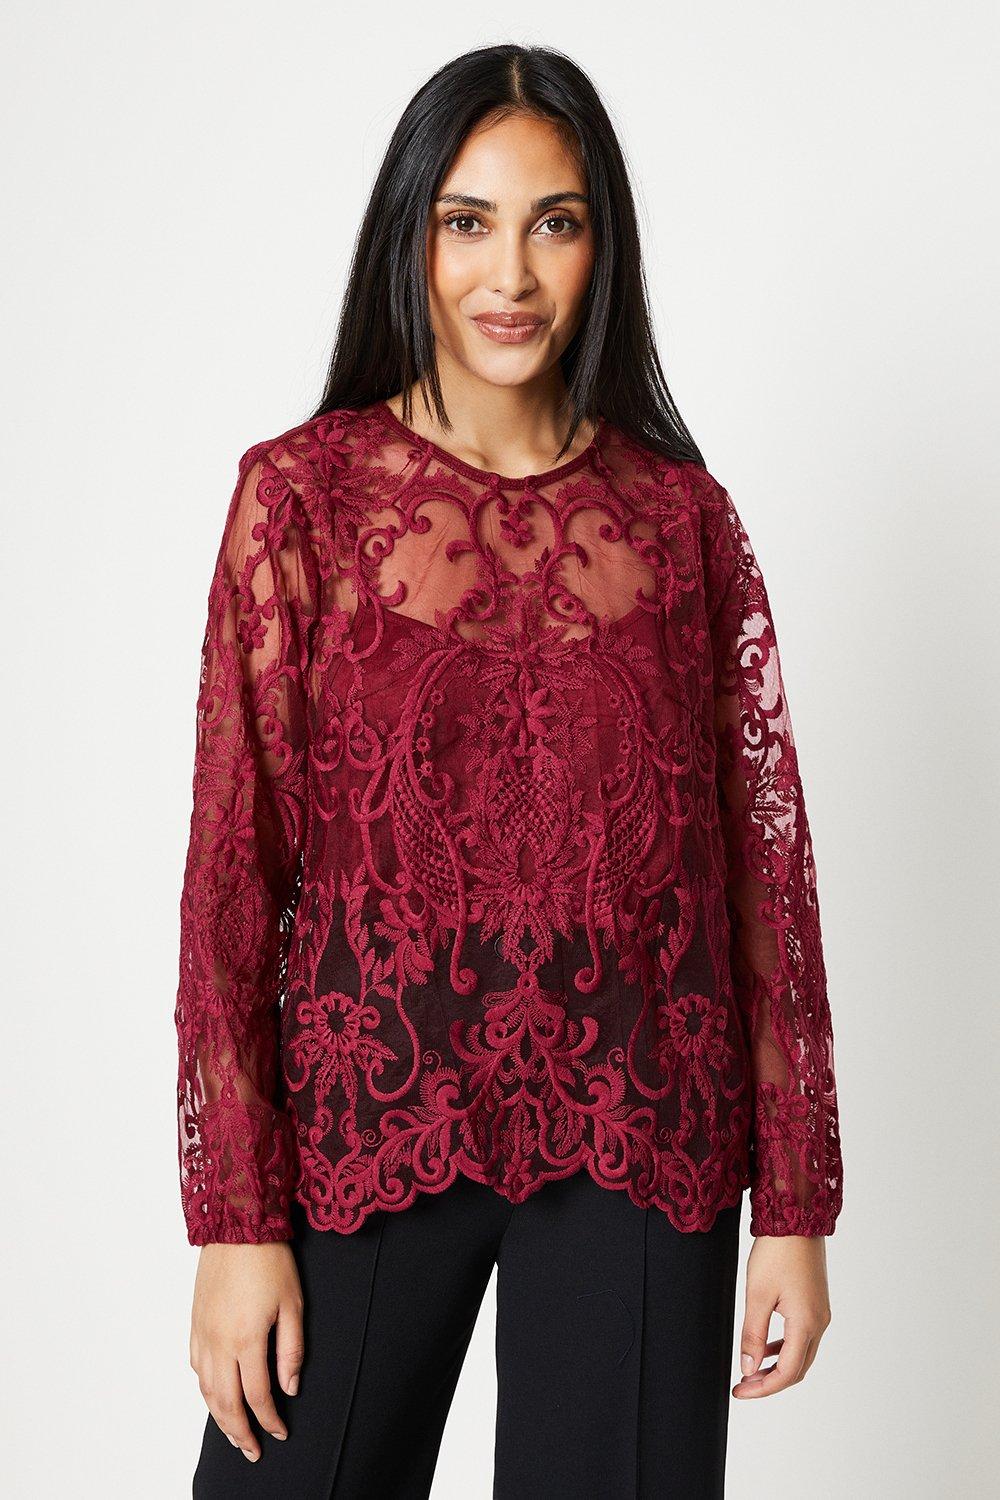 Миниатюрная кружевная блузка с высоким воротником Wallis, красный кружевная рубашка с лацканами имитация воротника для женщин съемные воротники дамская блузка с ложным воротником женский свитер съемны